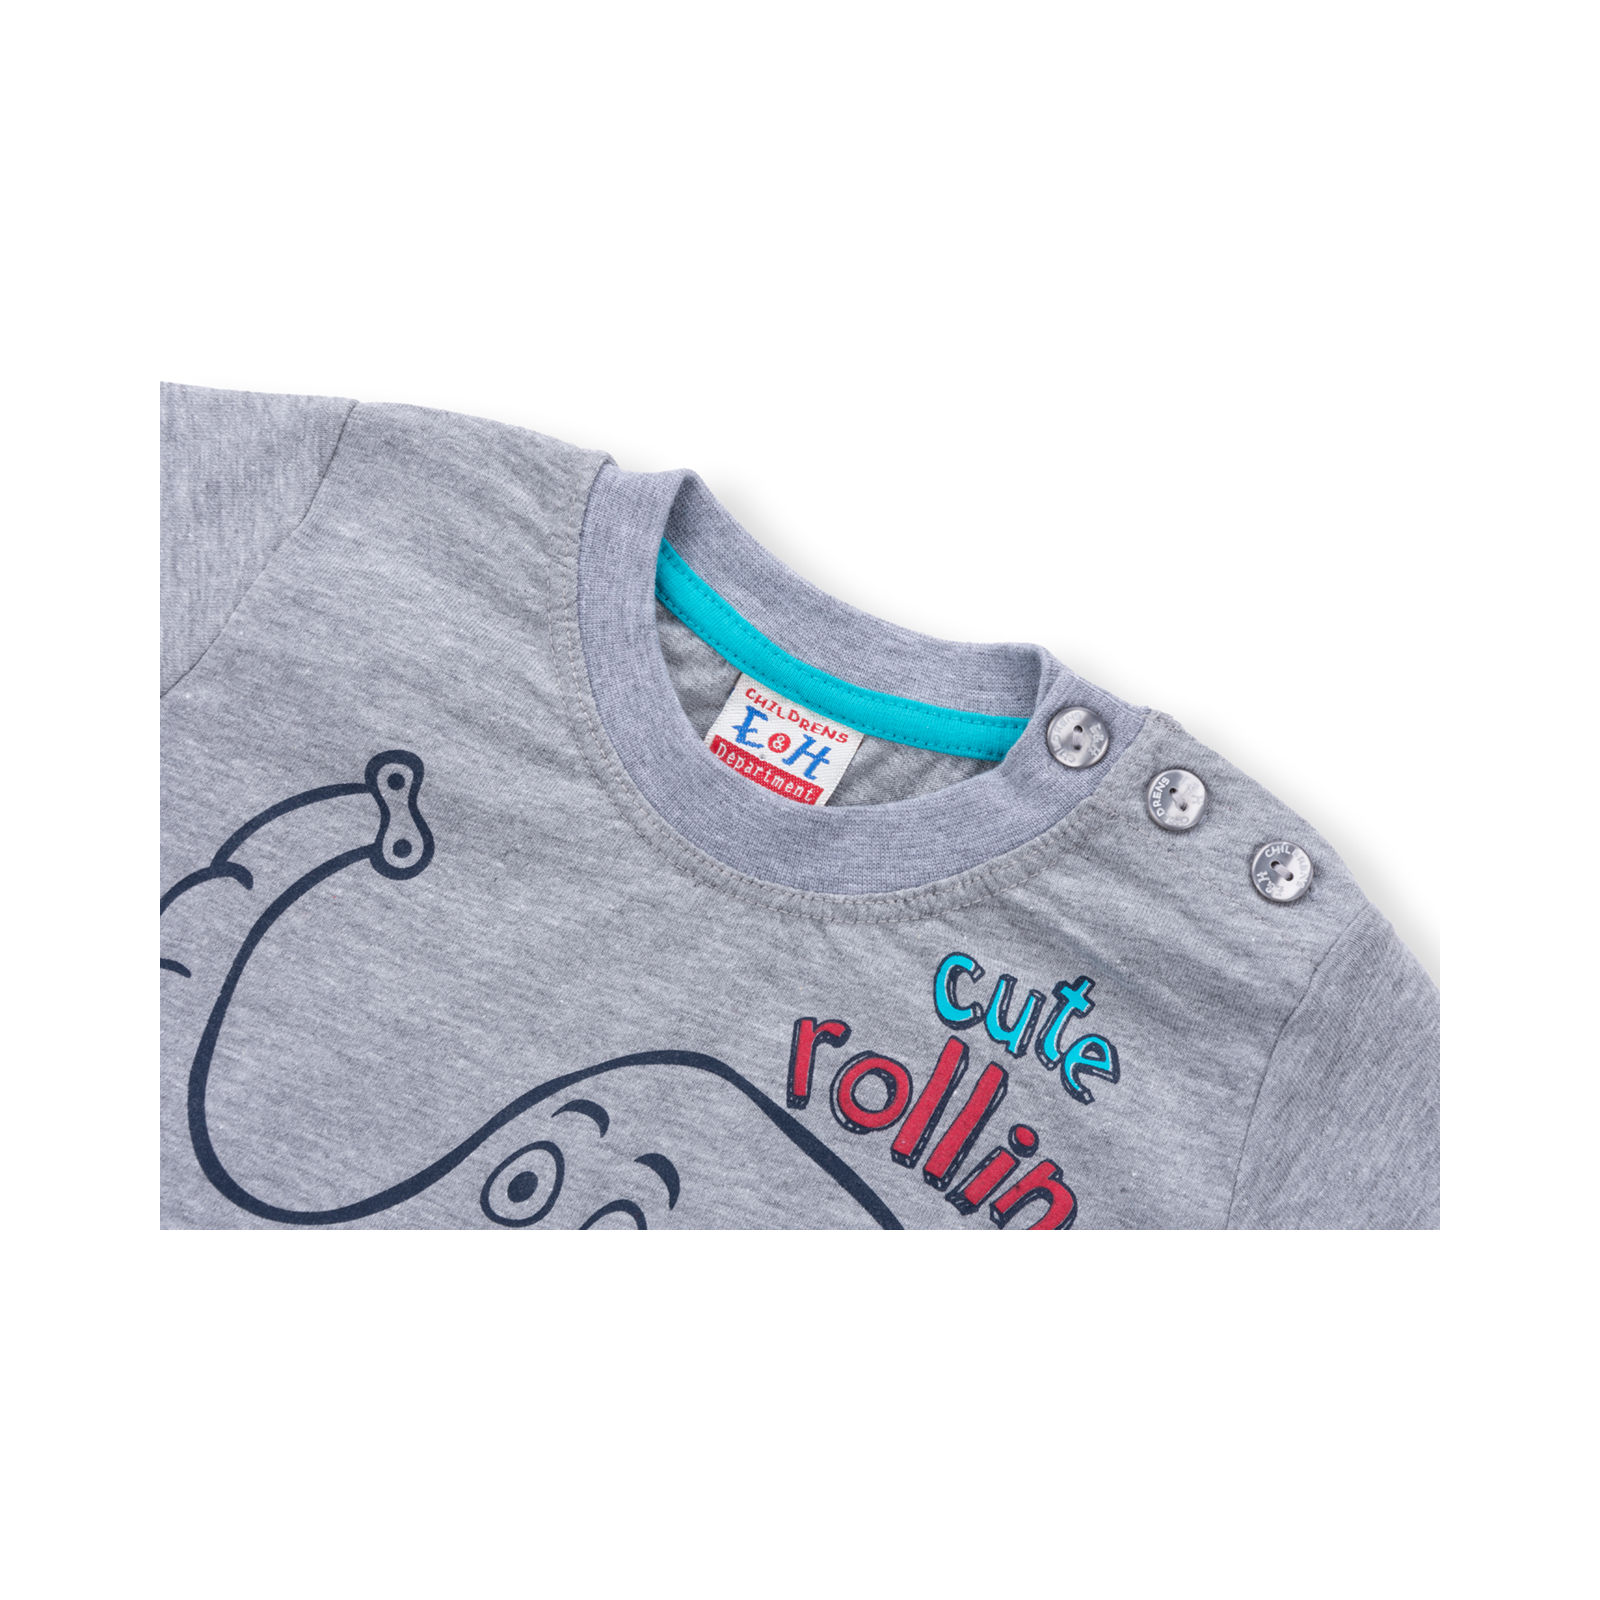 Набор детской одежды Breeze со слоником (6199-98B-blue) изображение 4